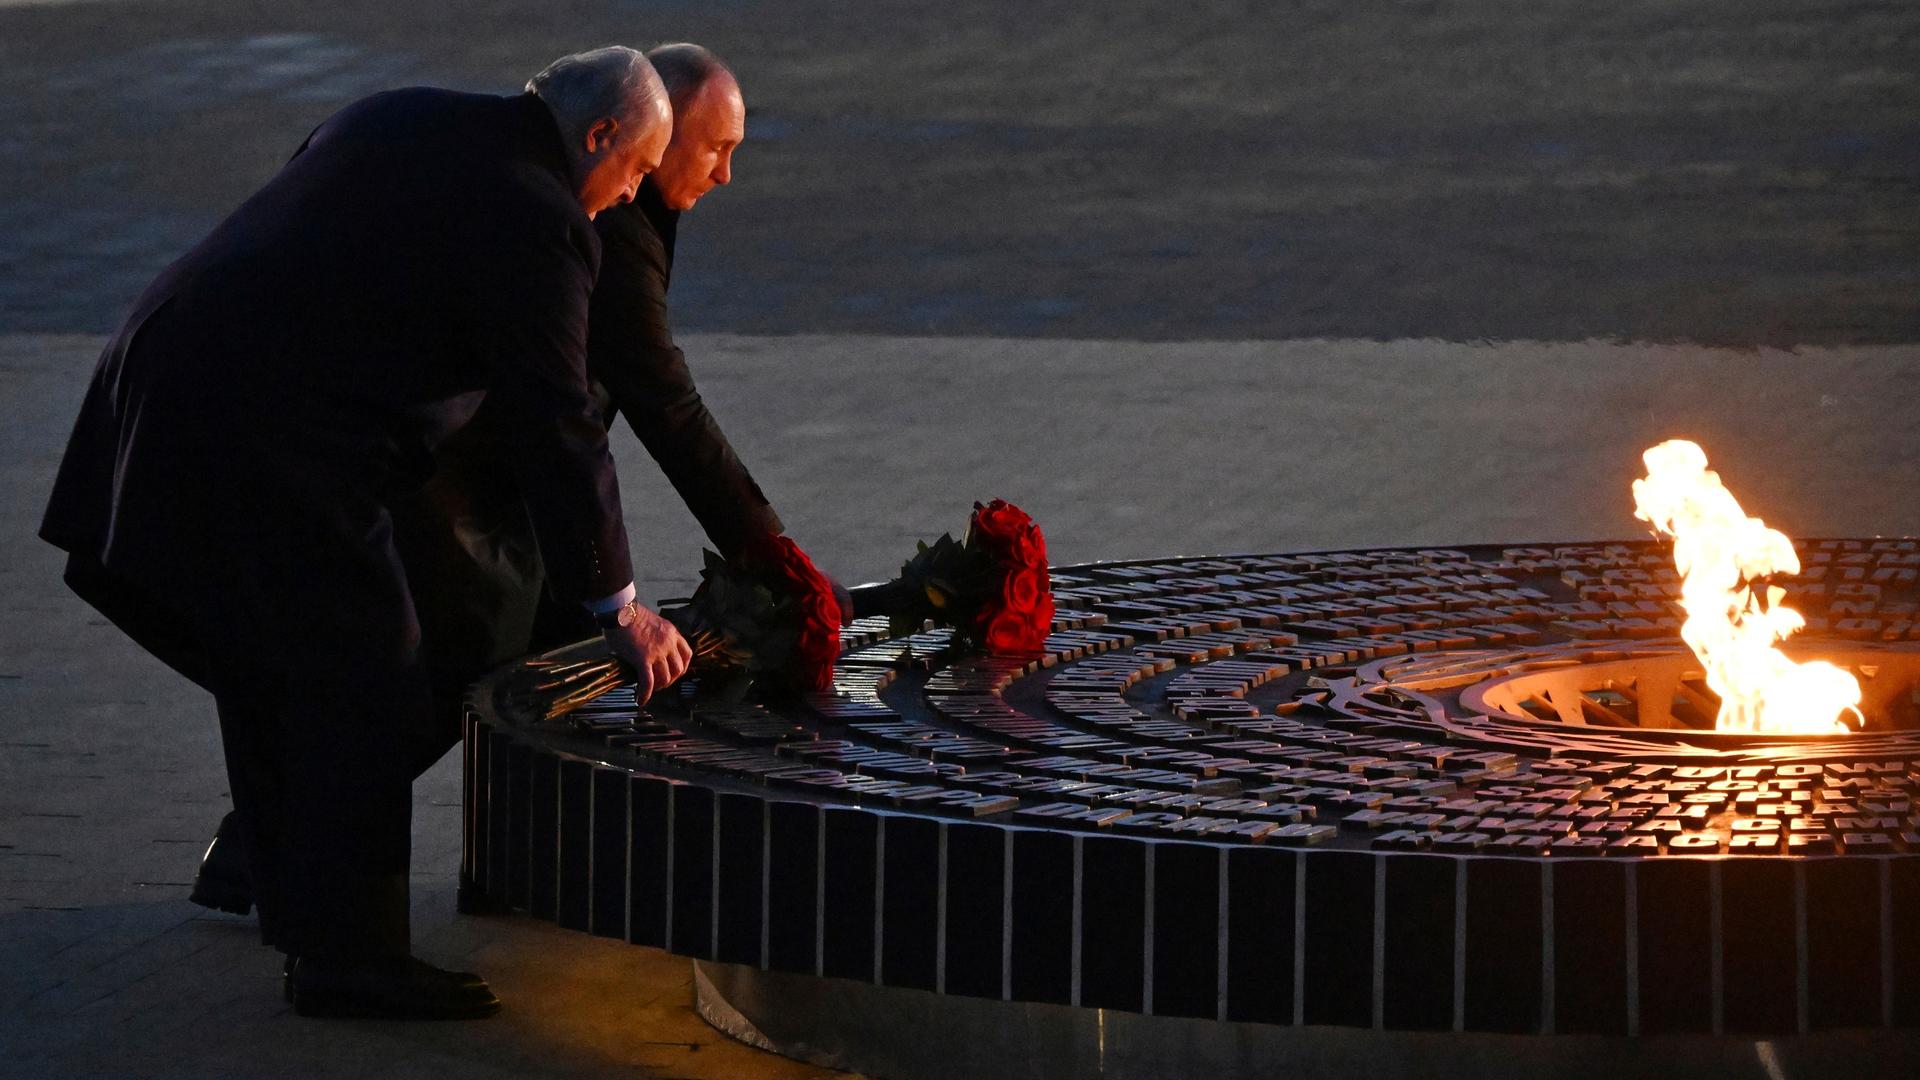 Der russische Präsident Wladimir Putin und der belarussische Präsident Alexander Lukaschenko, legen an eiinem Denkmal Blumen nieder.